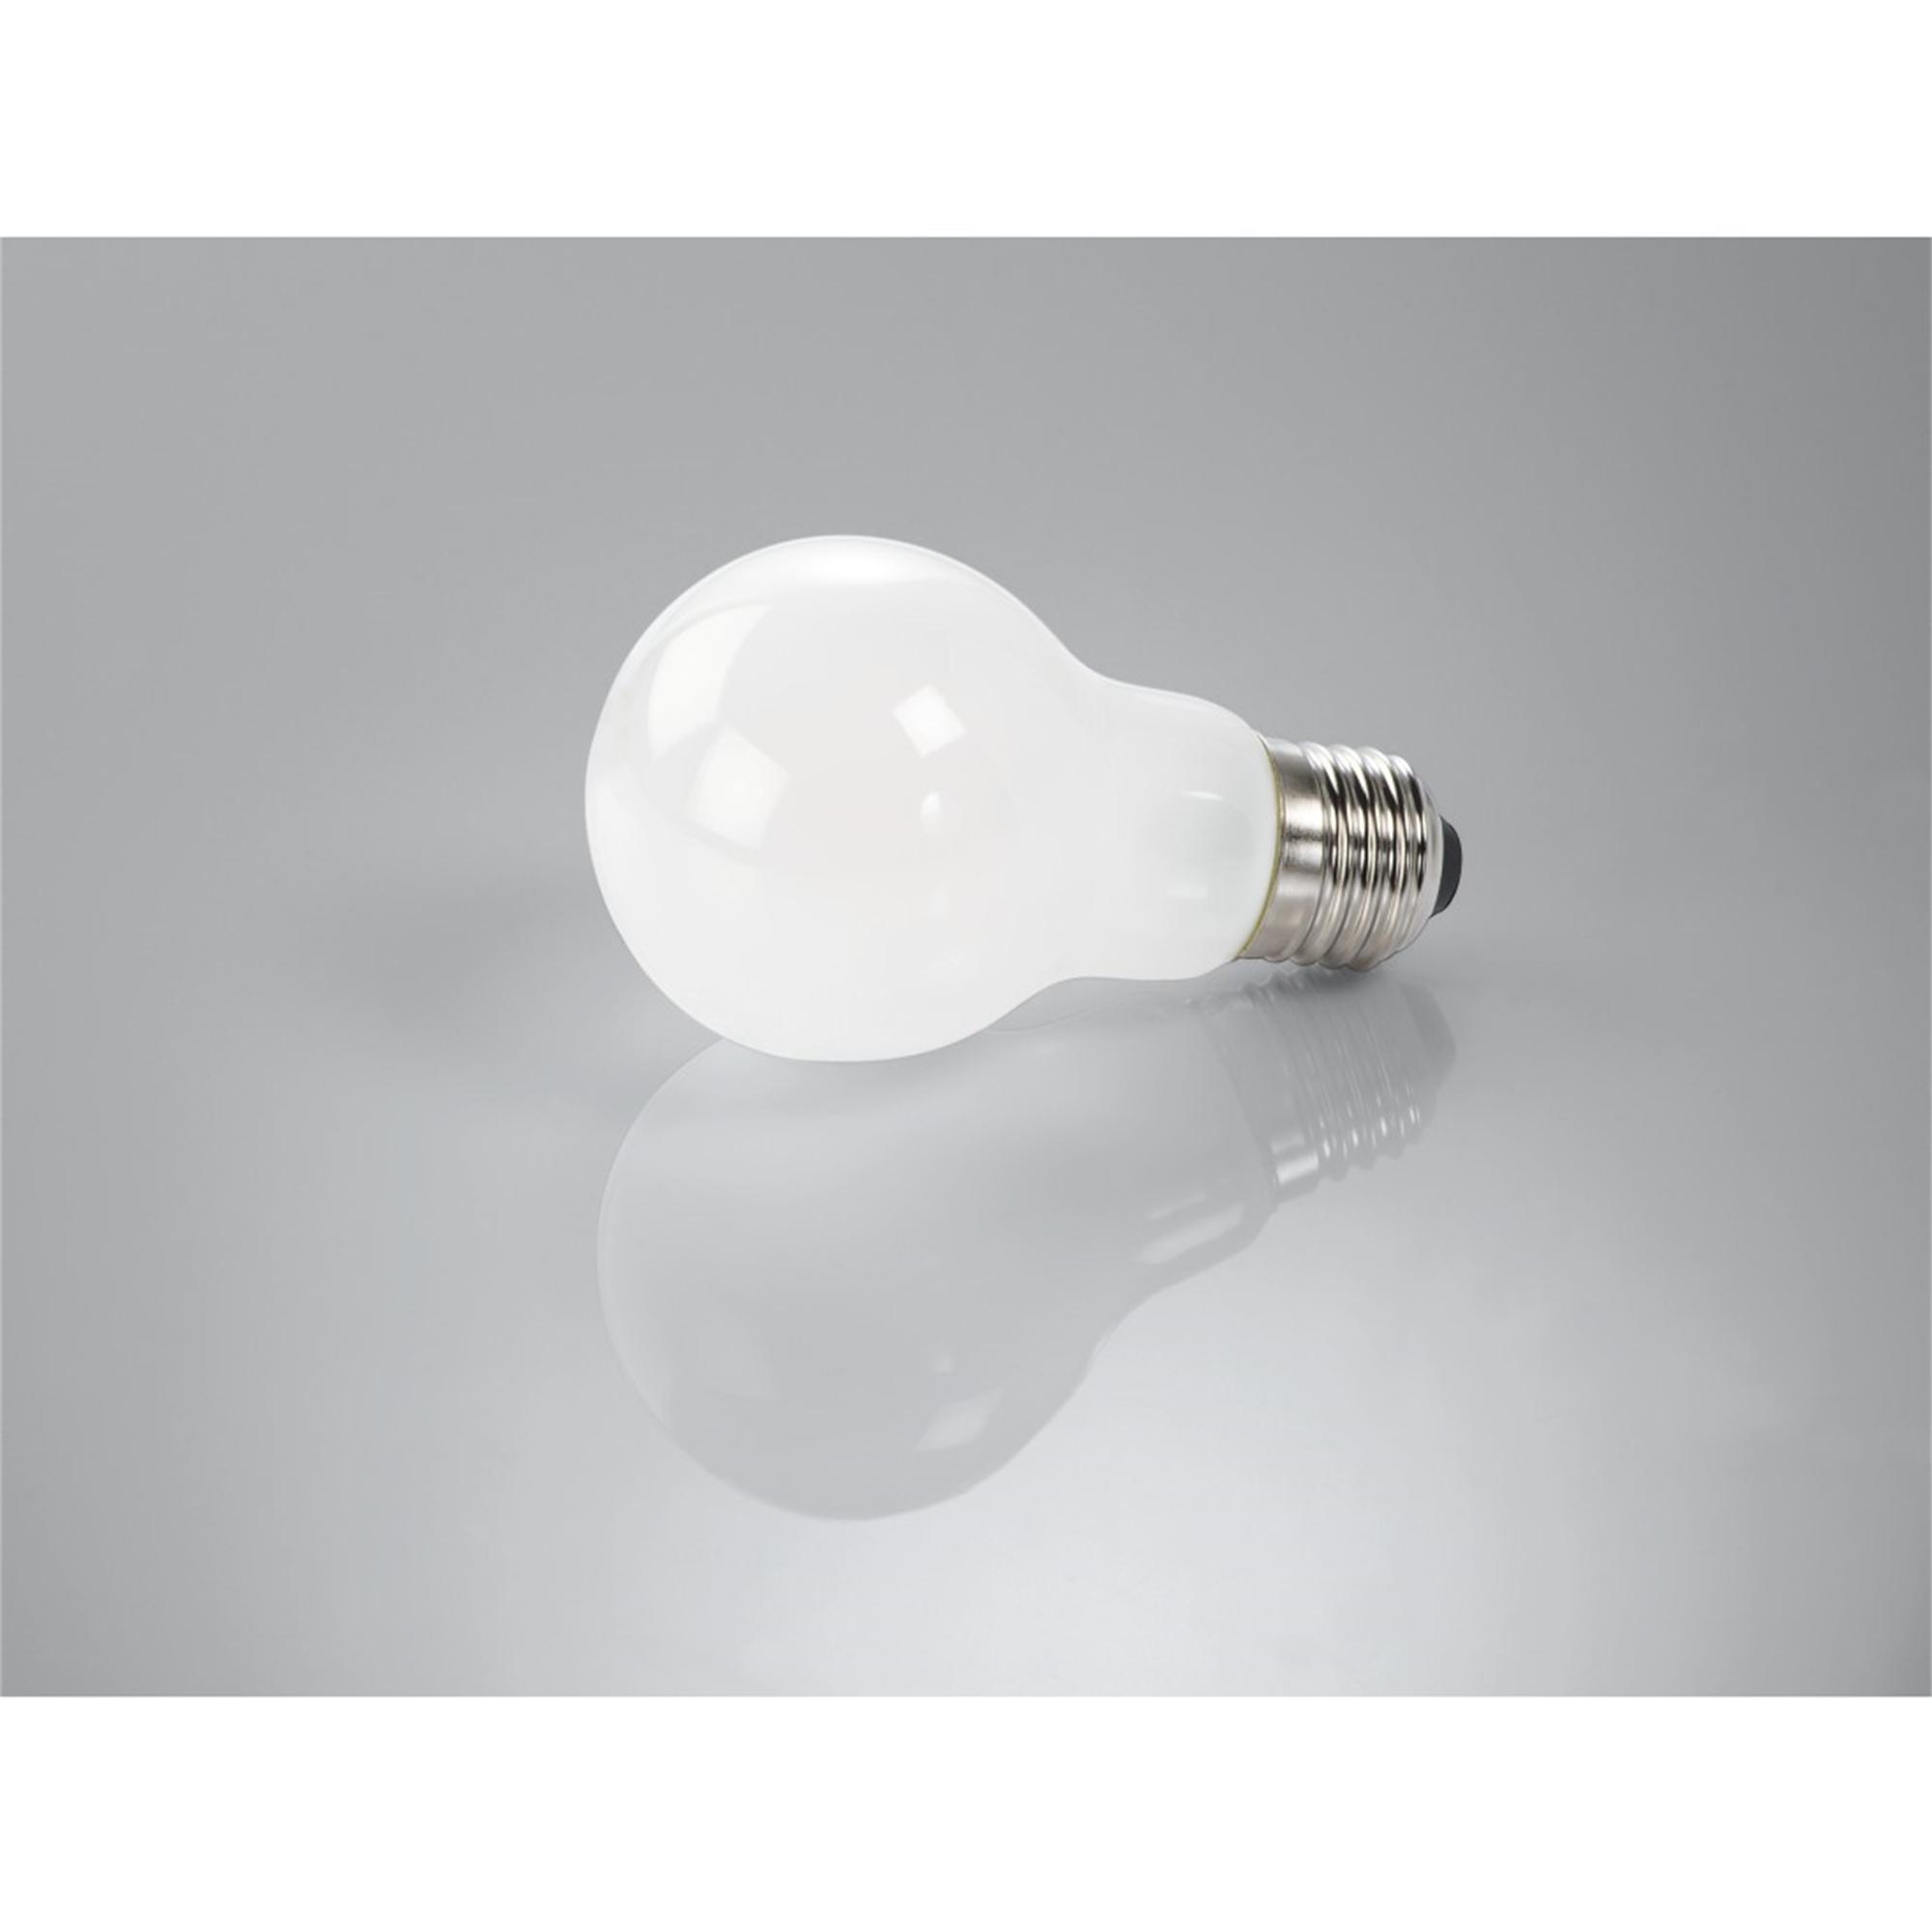 XAVAX E27, E27 LED-Lampe Warmweiß 806lm 60W ersetzt